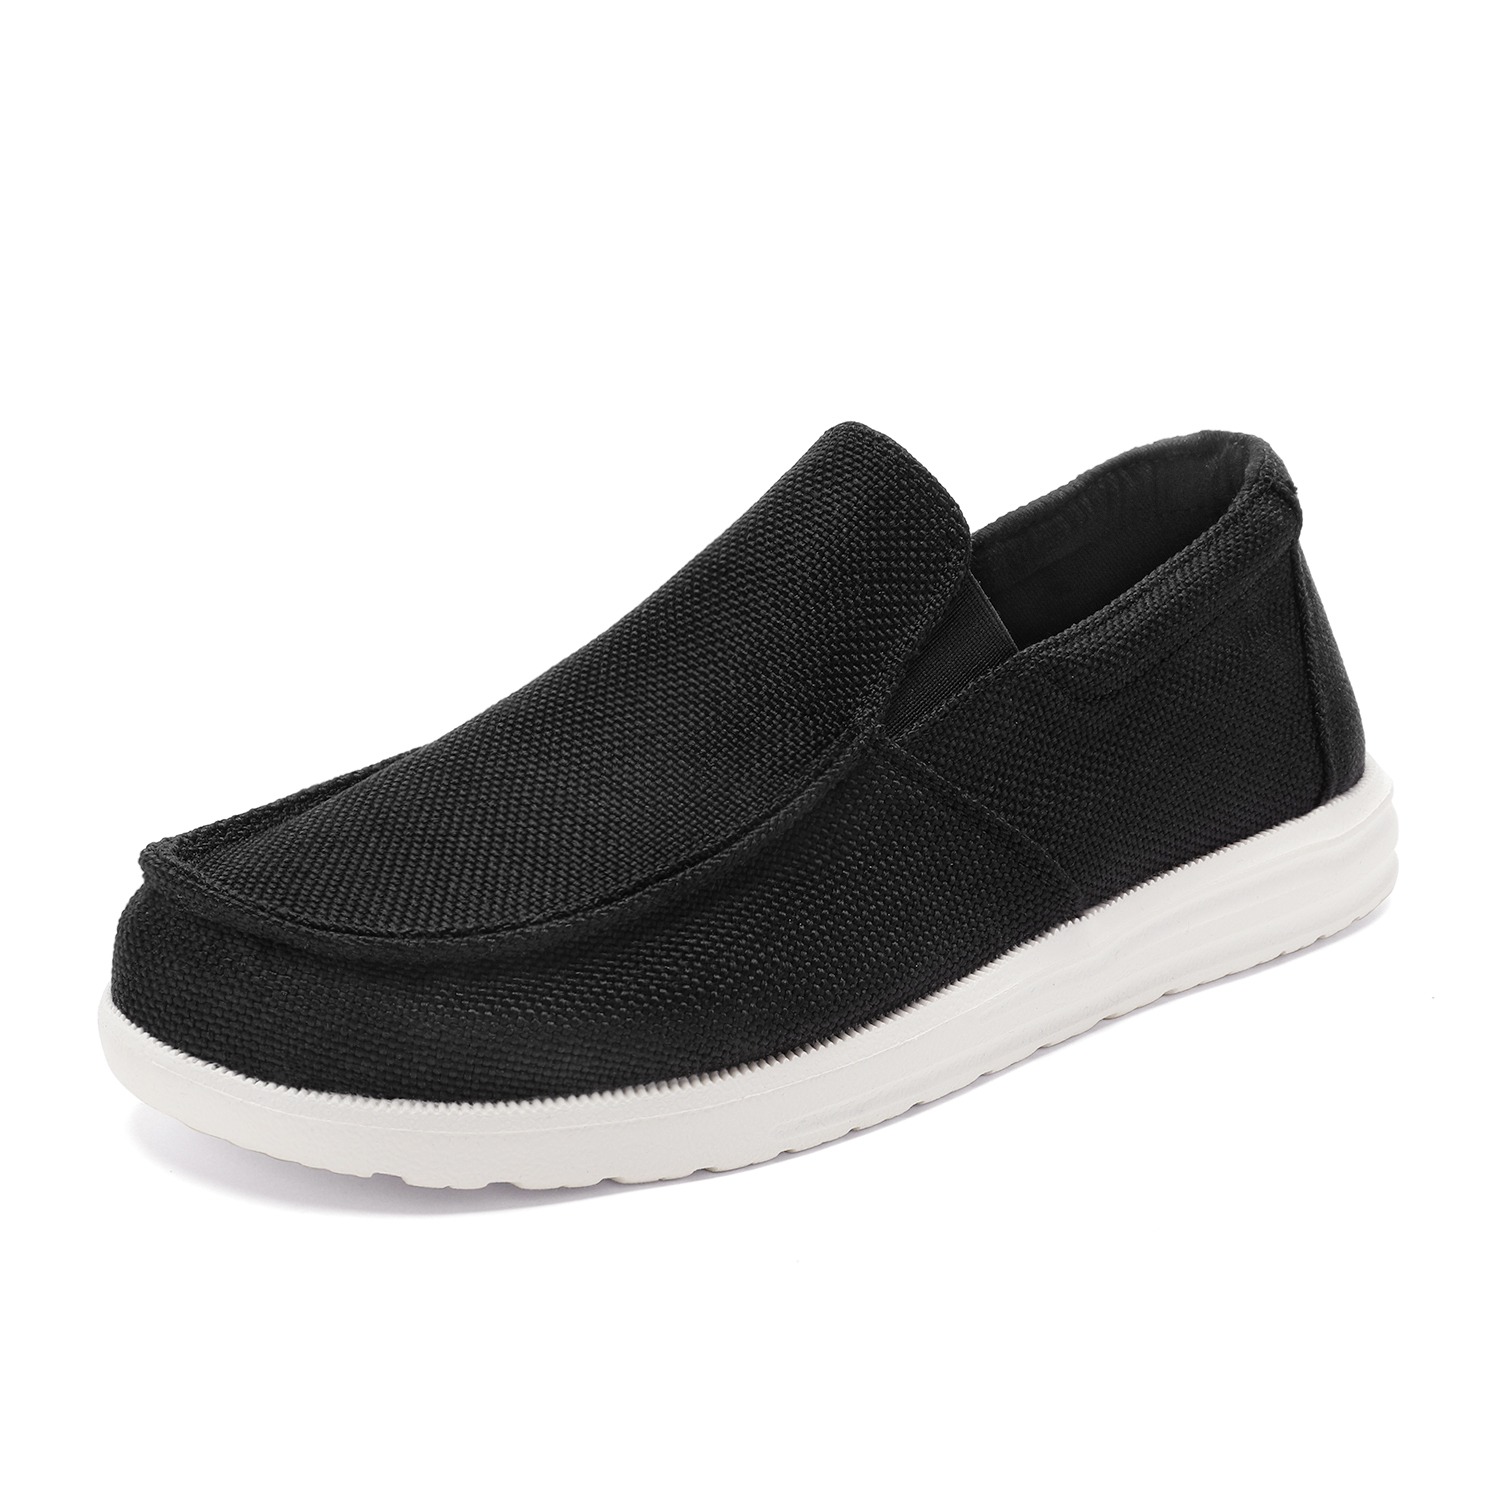 Bruno Marc Men's Slip On Loafer Walking Shoes SUNVENT-01 BLACK size 6.5 - image 1 of 5